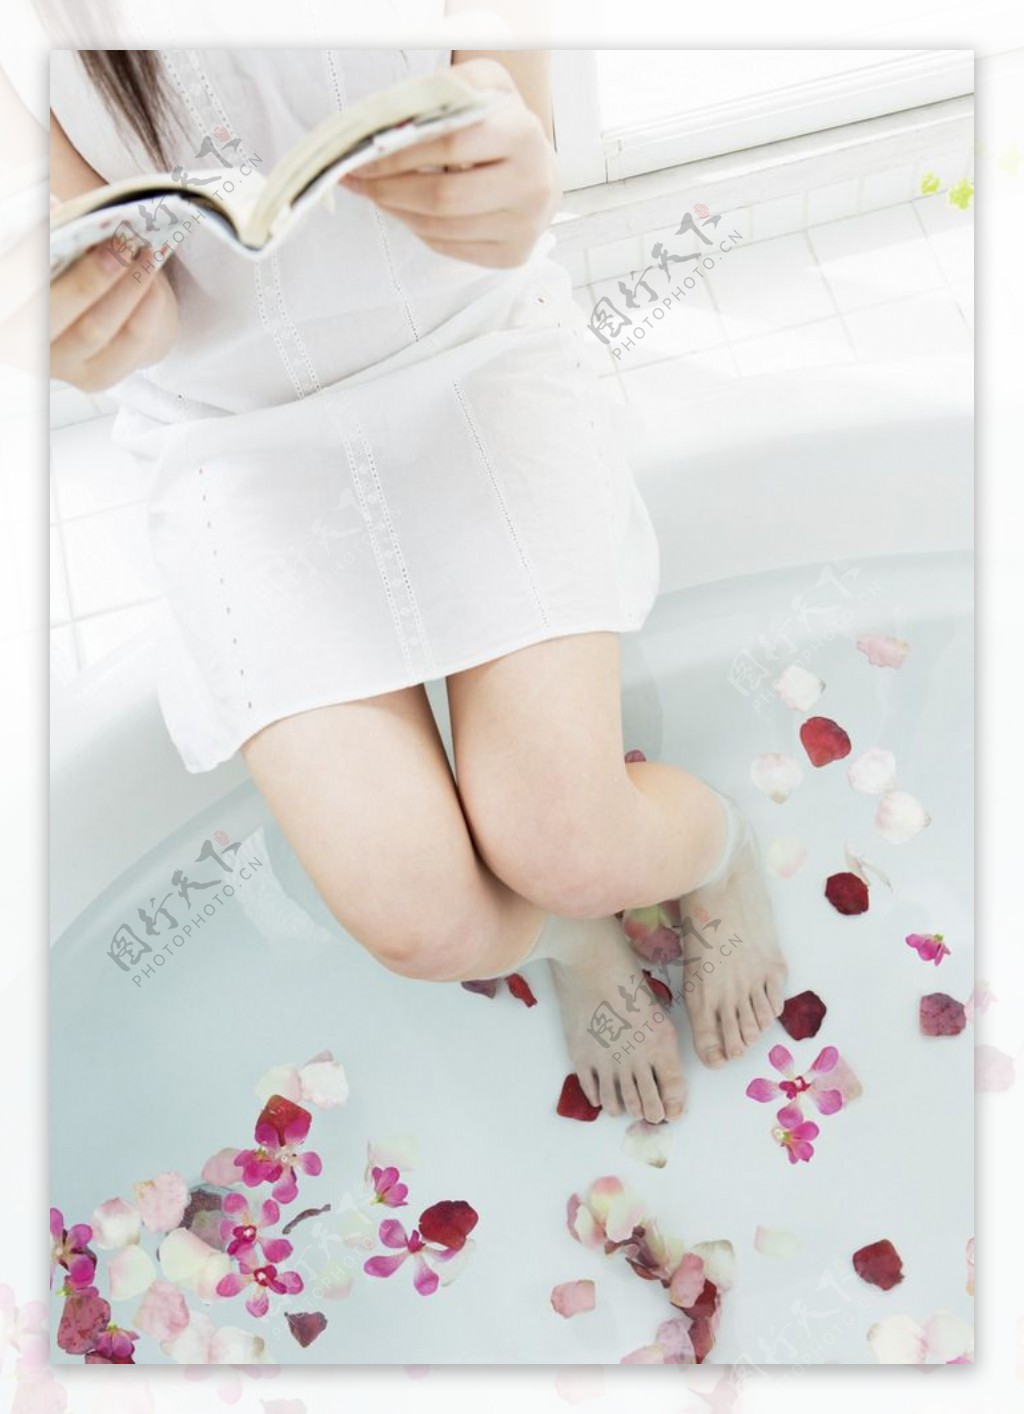 ผู้หญิงสวยอาบน้ำระหว่างวัน พื้นหลัง และรูปภาพสำหรับดาวน์โหลดฟรี - Pngtree